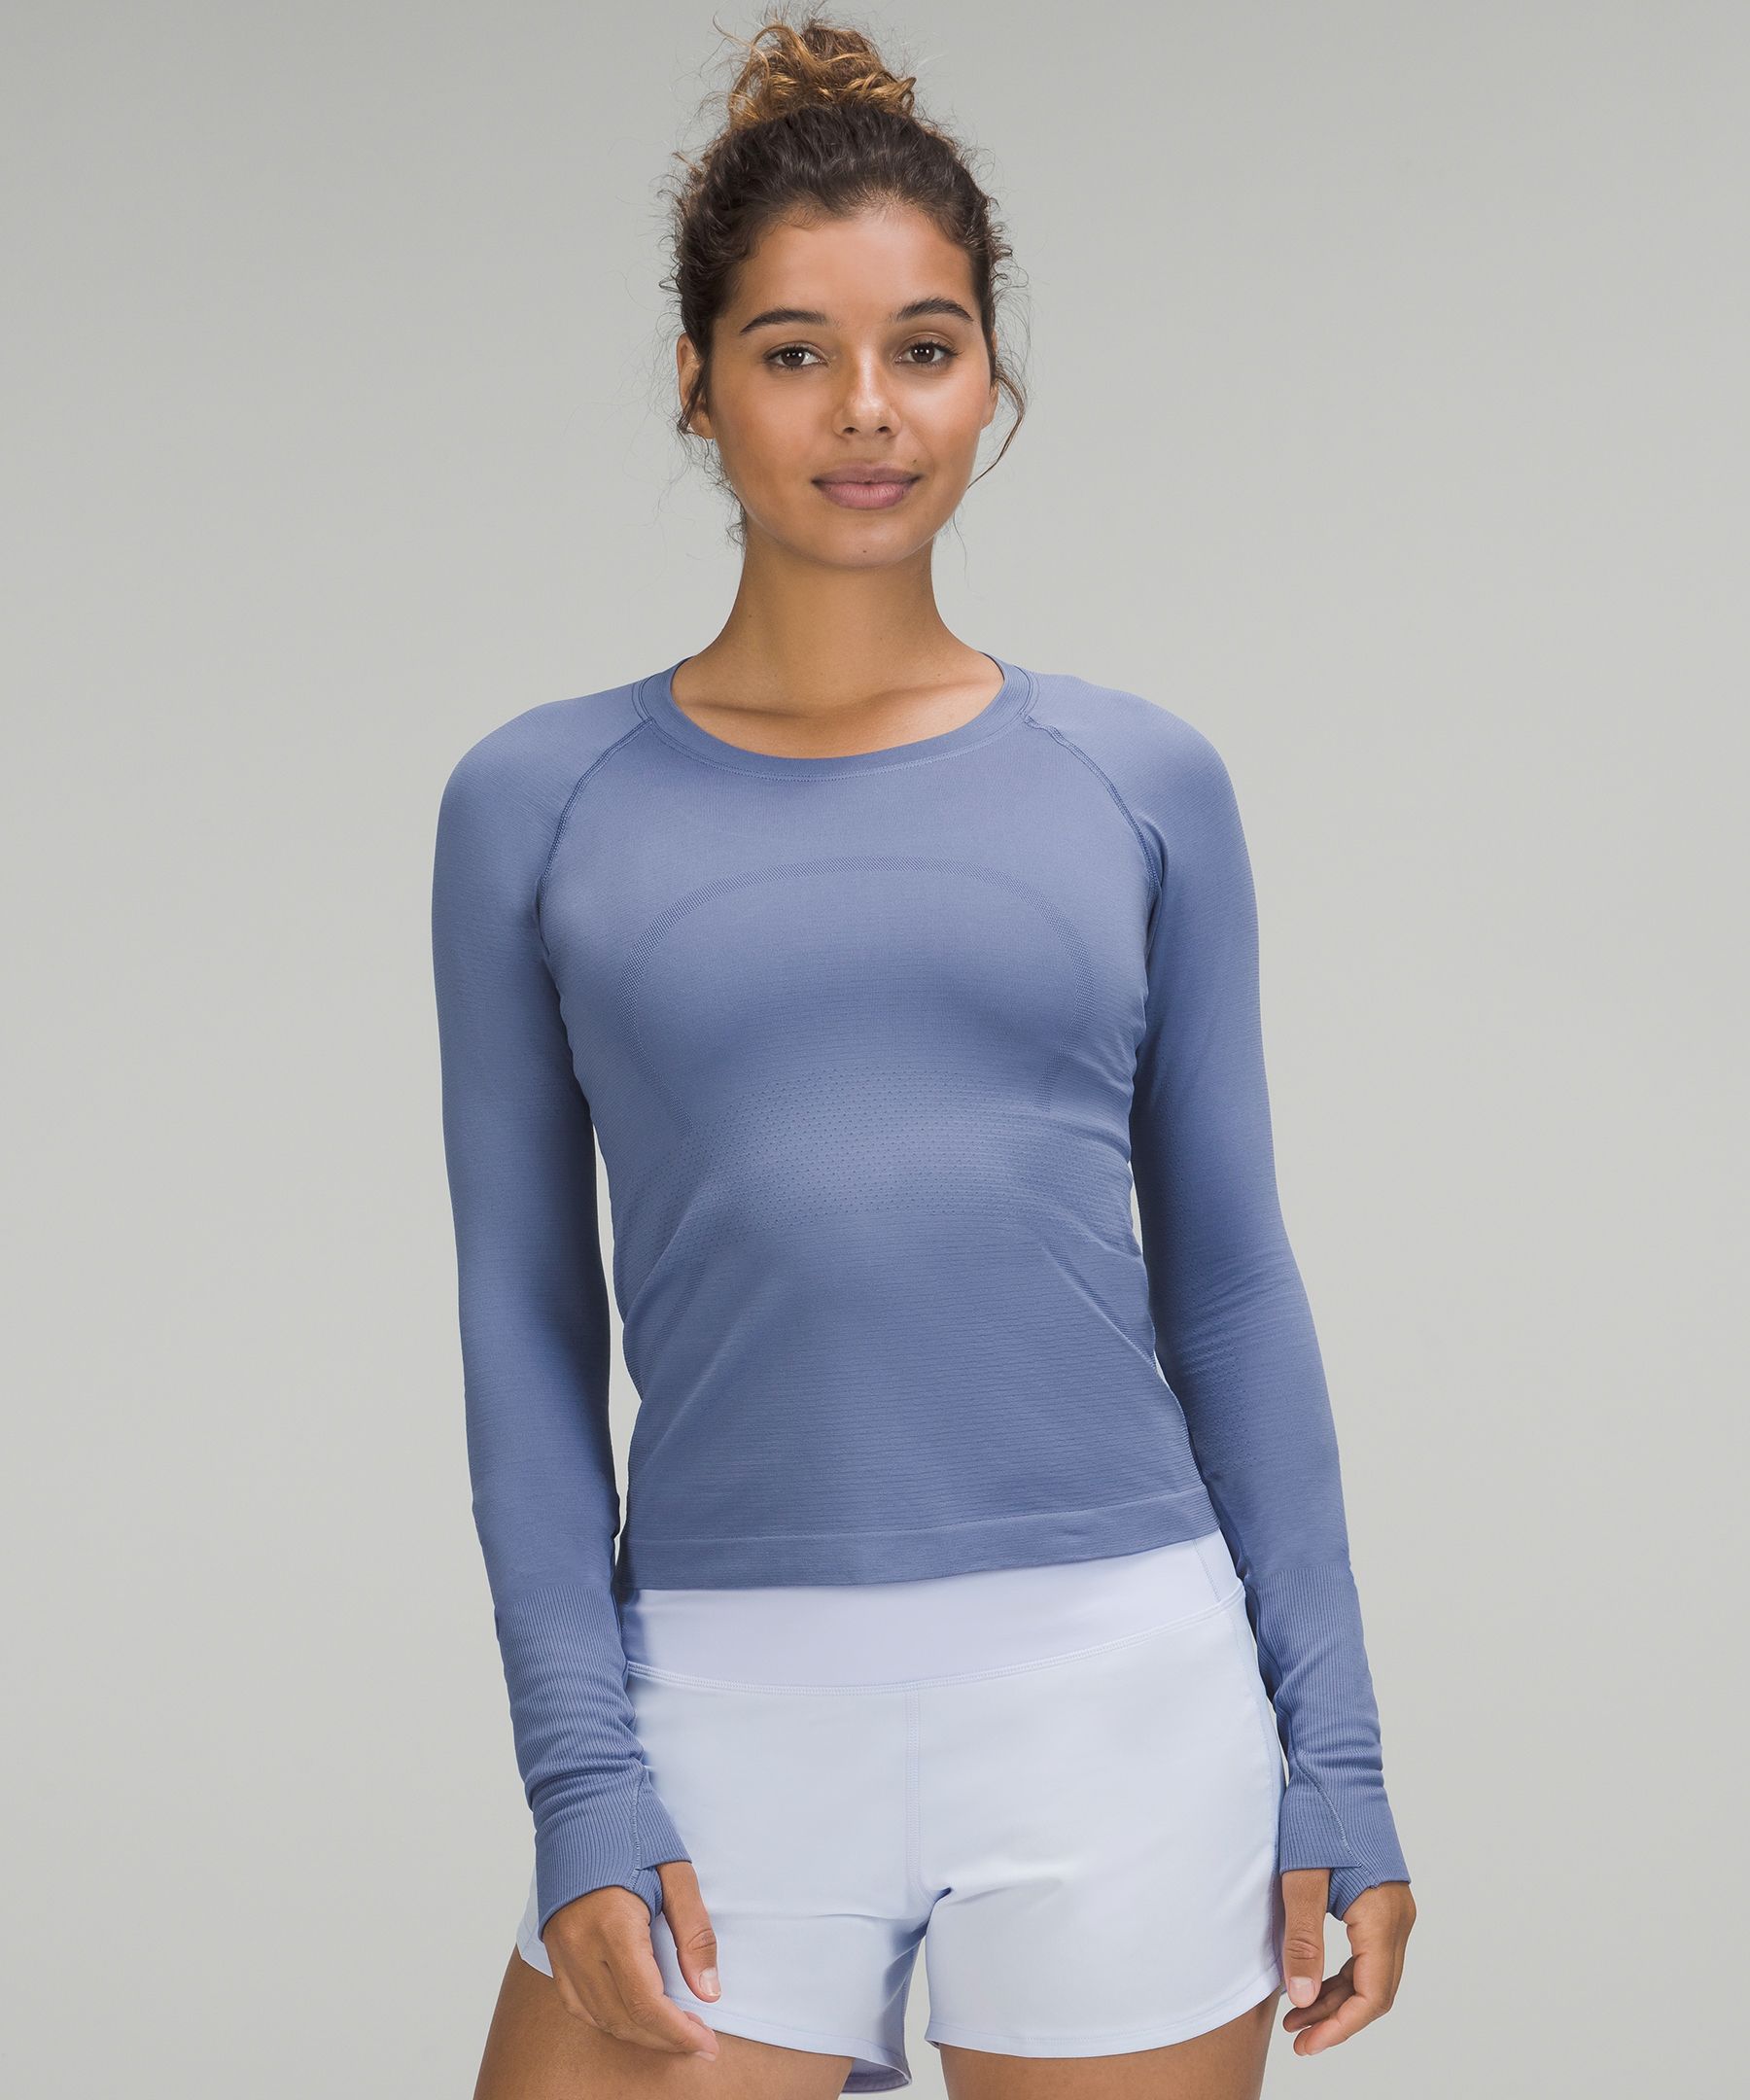 Swiftly Tech Long-Sleeve Shirt 2.0 | Women's Long Sleeve Shirts 